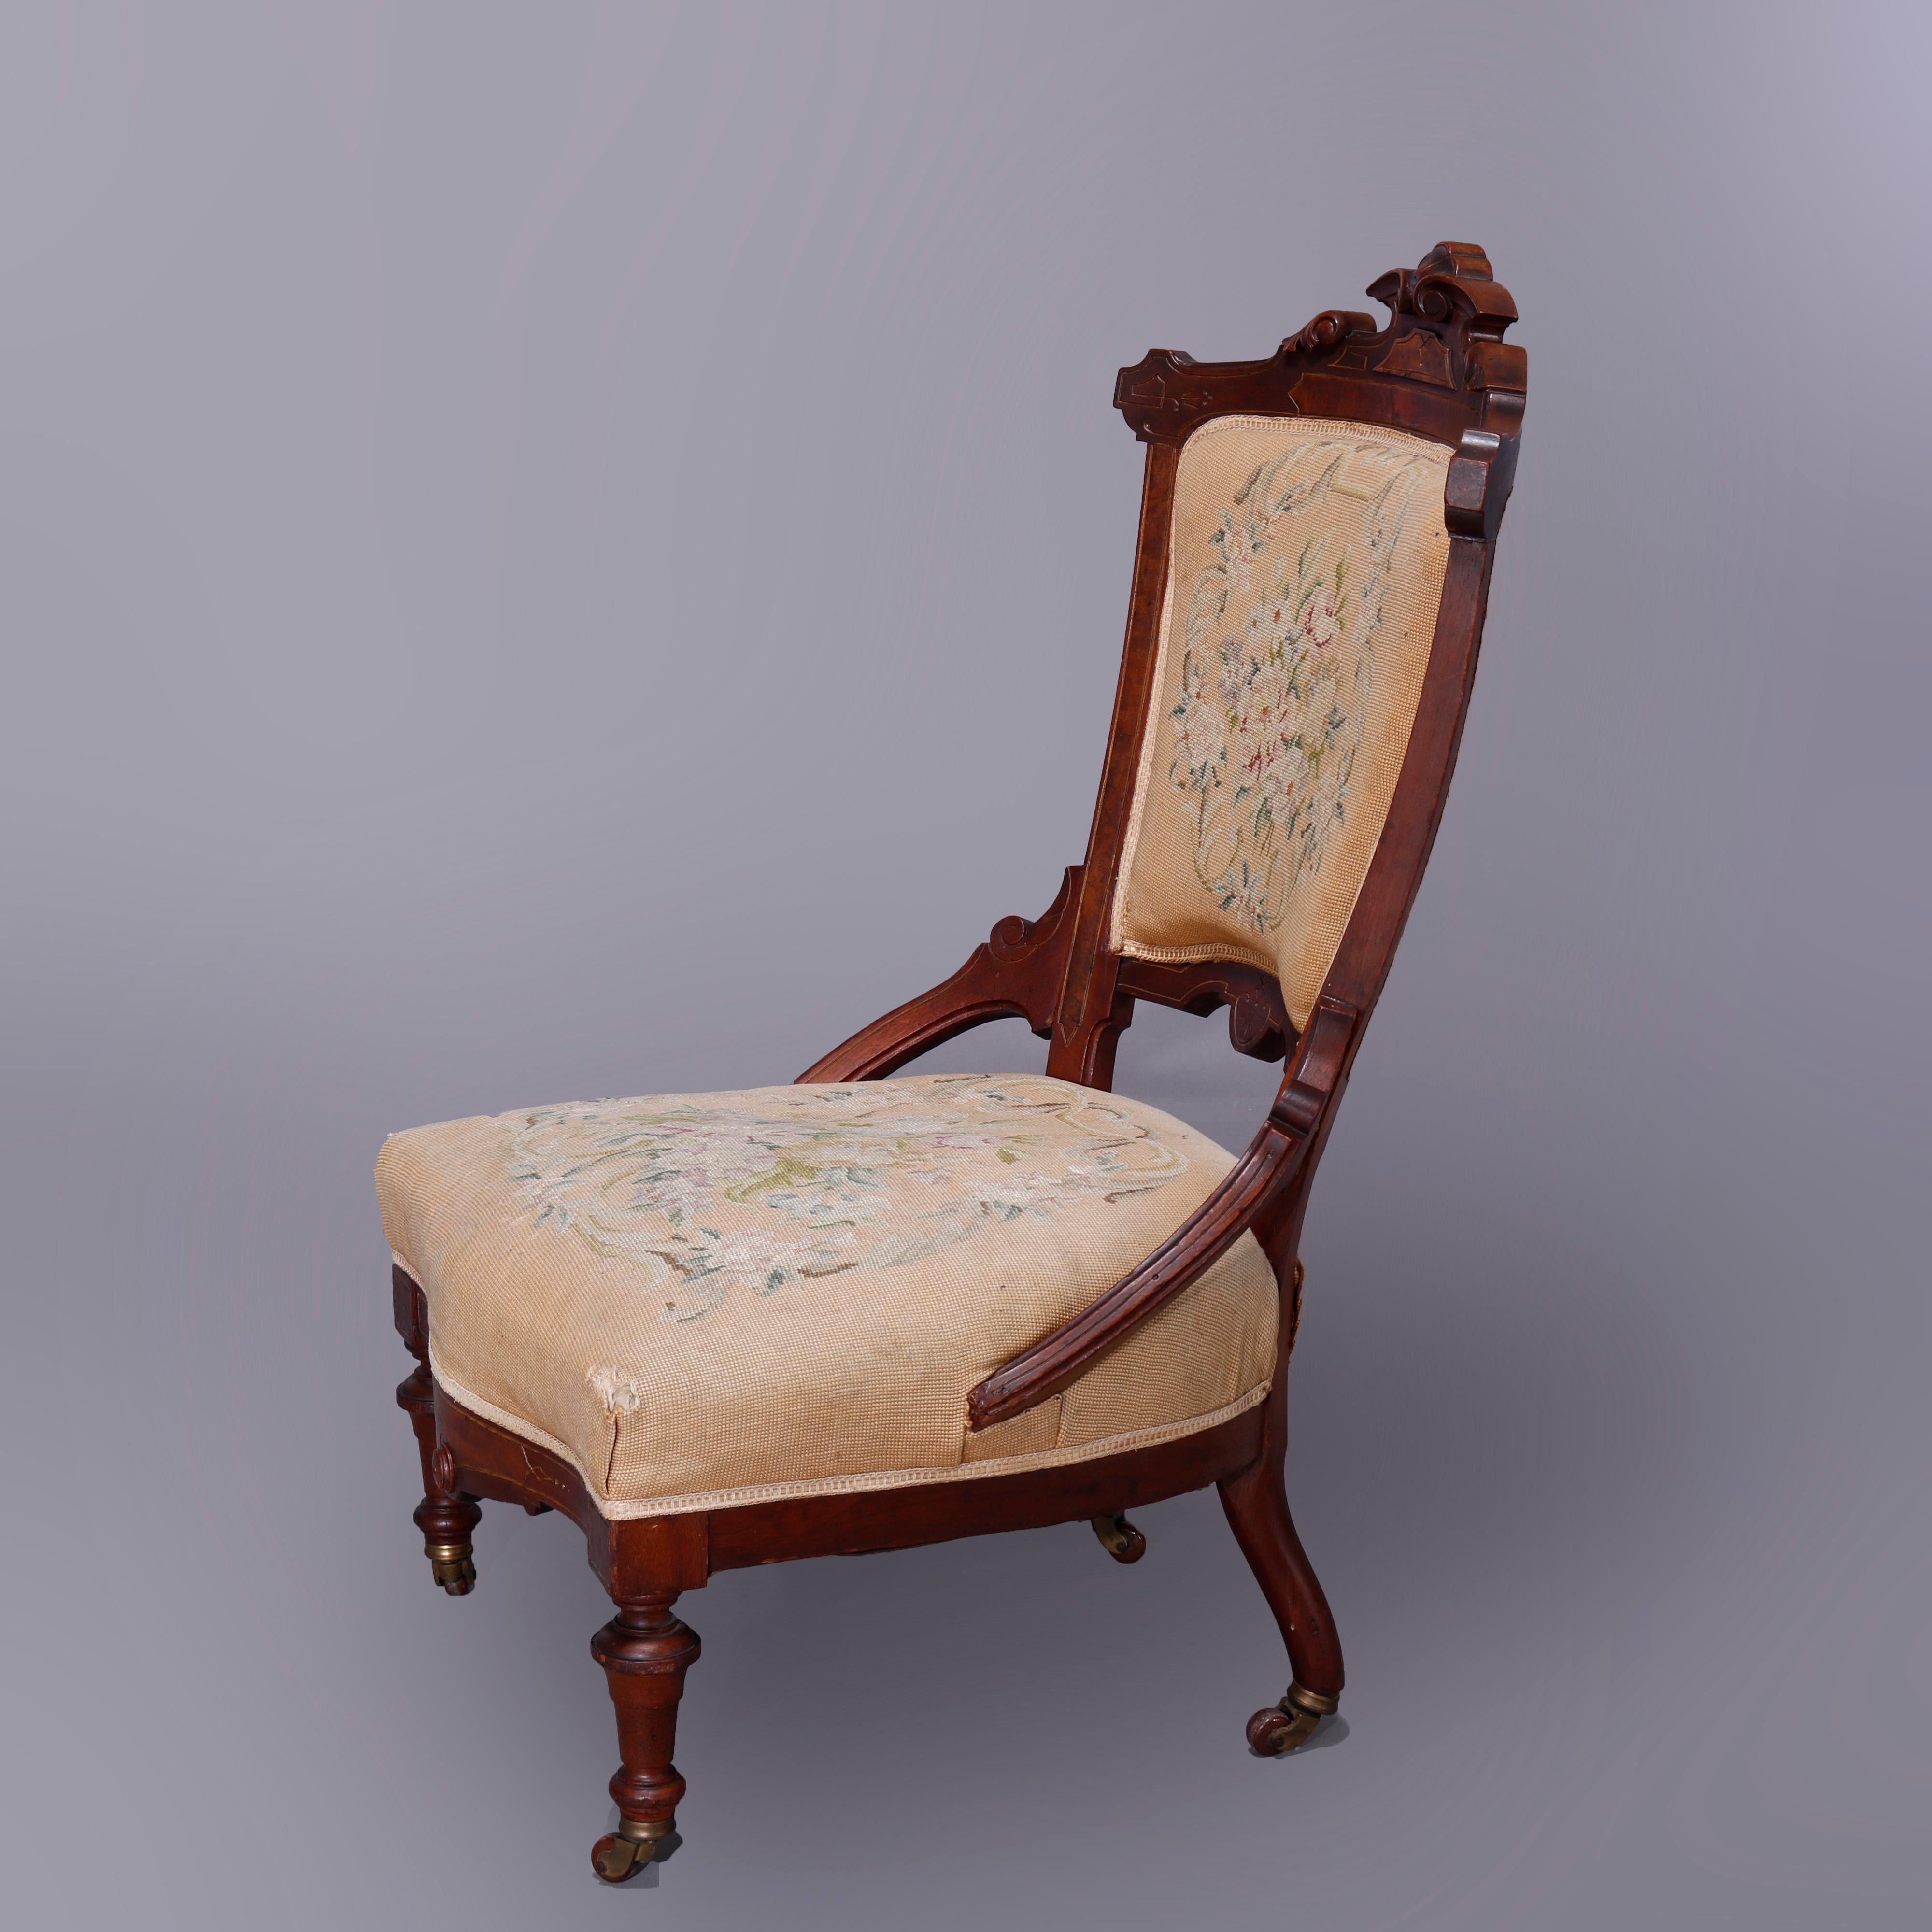 Antique Renaissance Revival Walnut, Burl & Needlepoint Parlor Chairs, c1890 For Sale 1